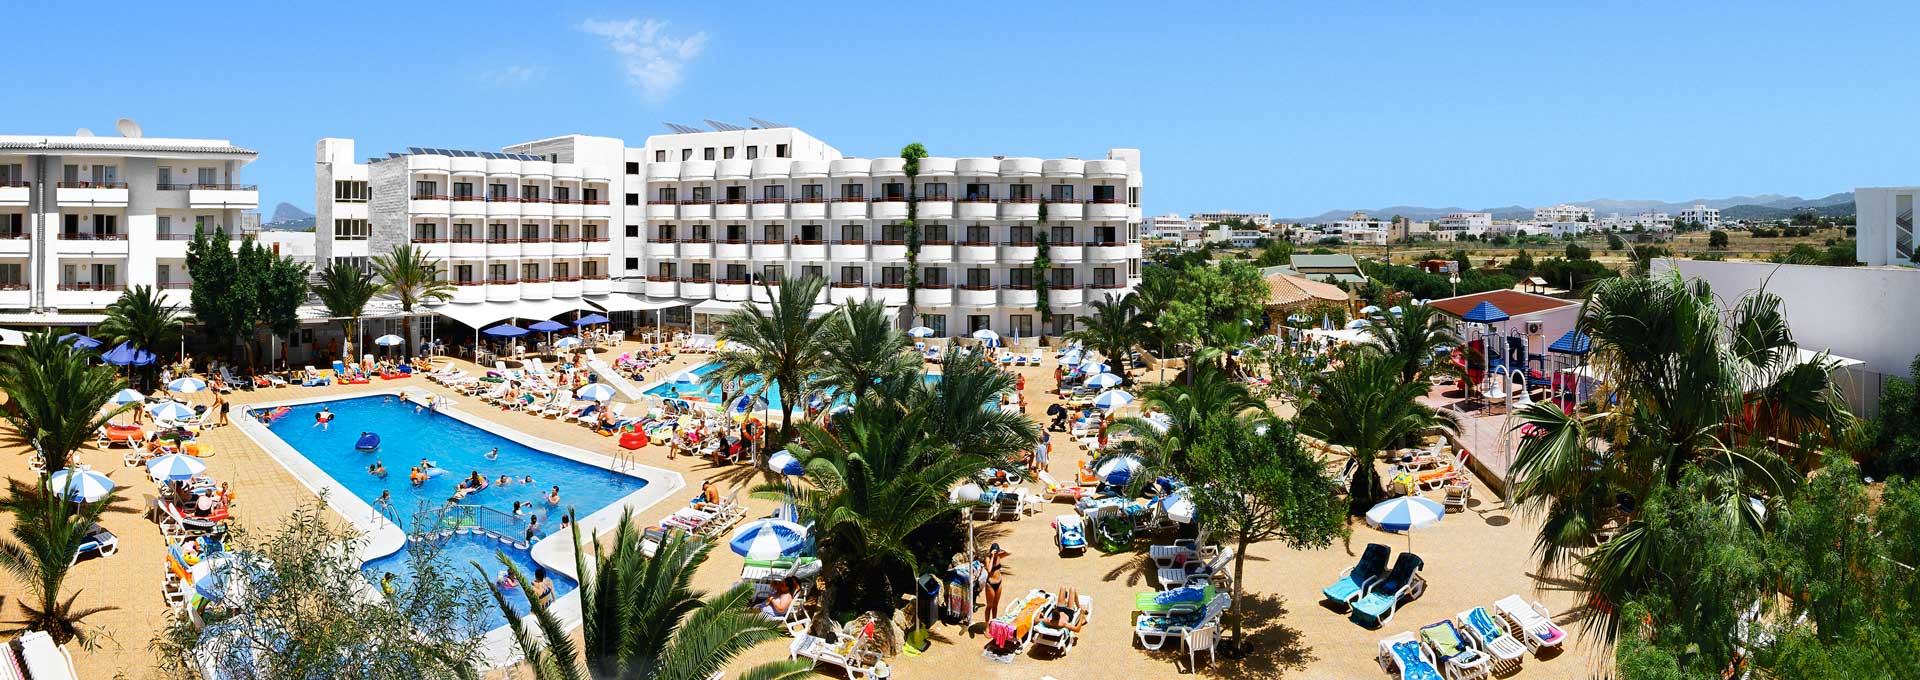 Resort Hotel and Apartments, Coral Star Ibiza - Grupo Star Resorts